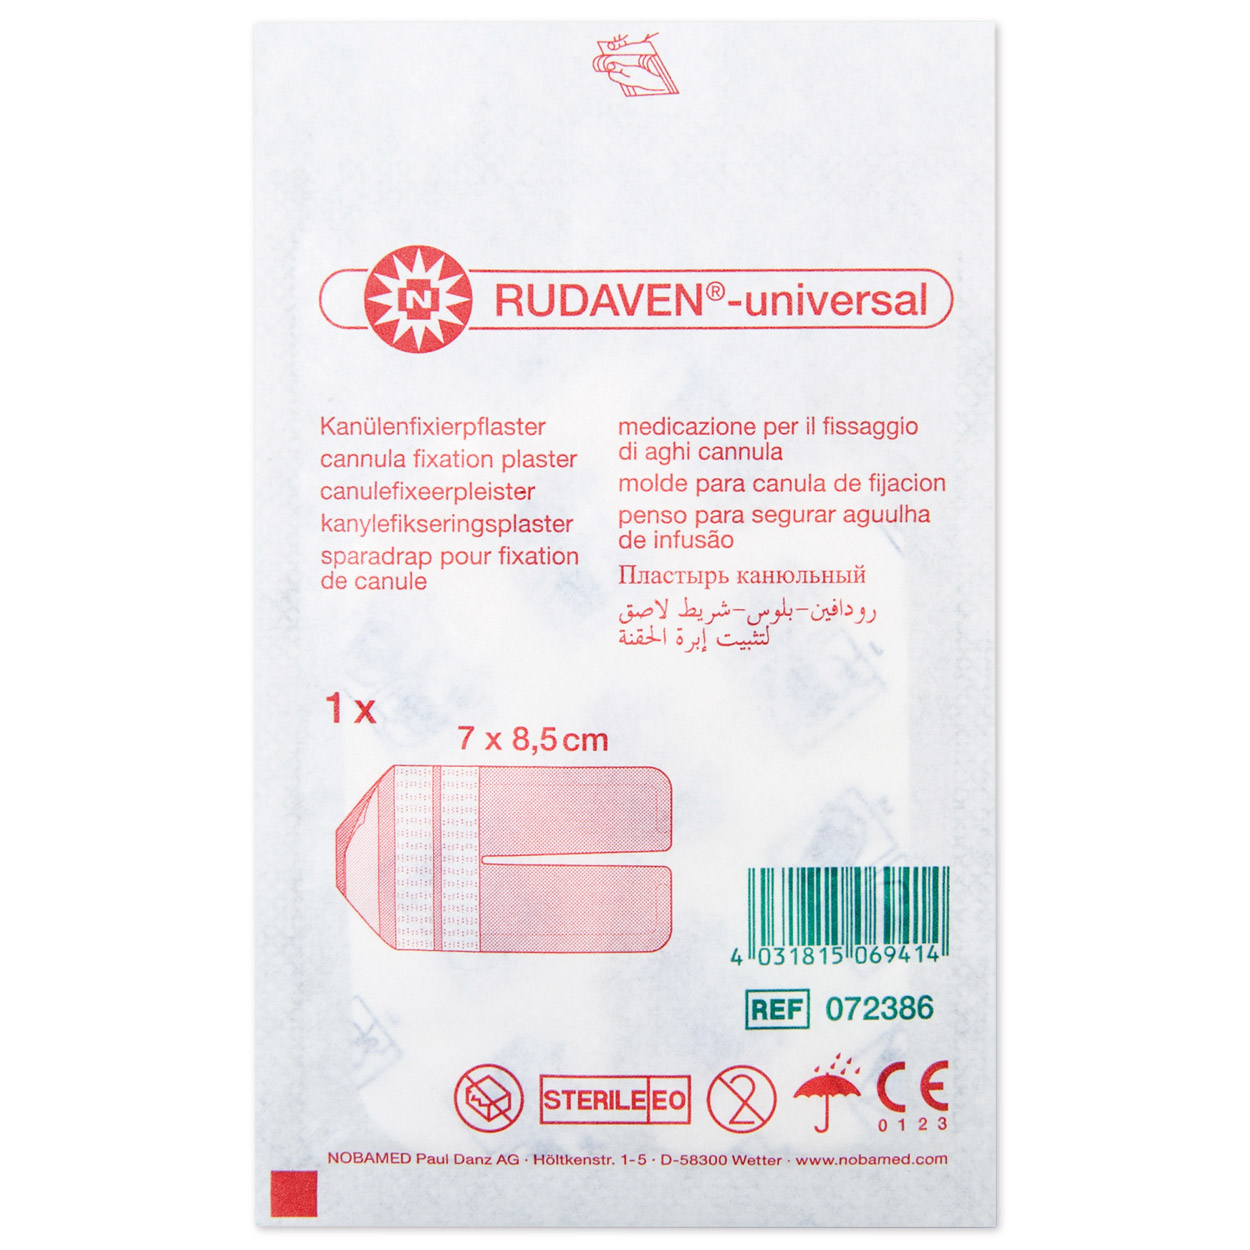 RUDAVEN®-universal Kanülenpflaster 7 x 8,5 cm - Packung à 50 Stück